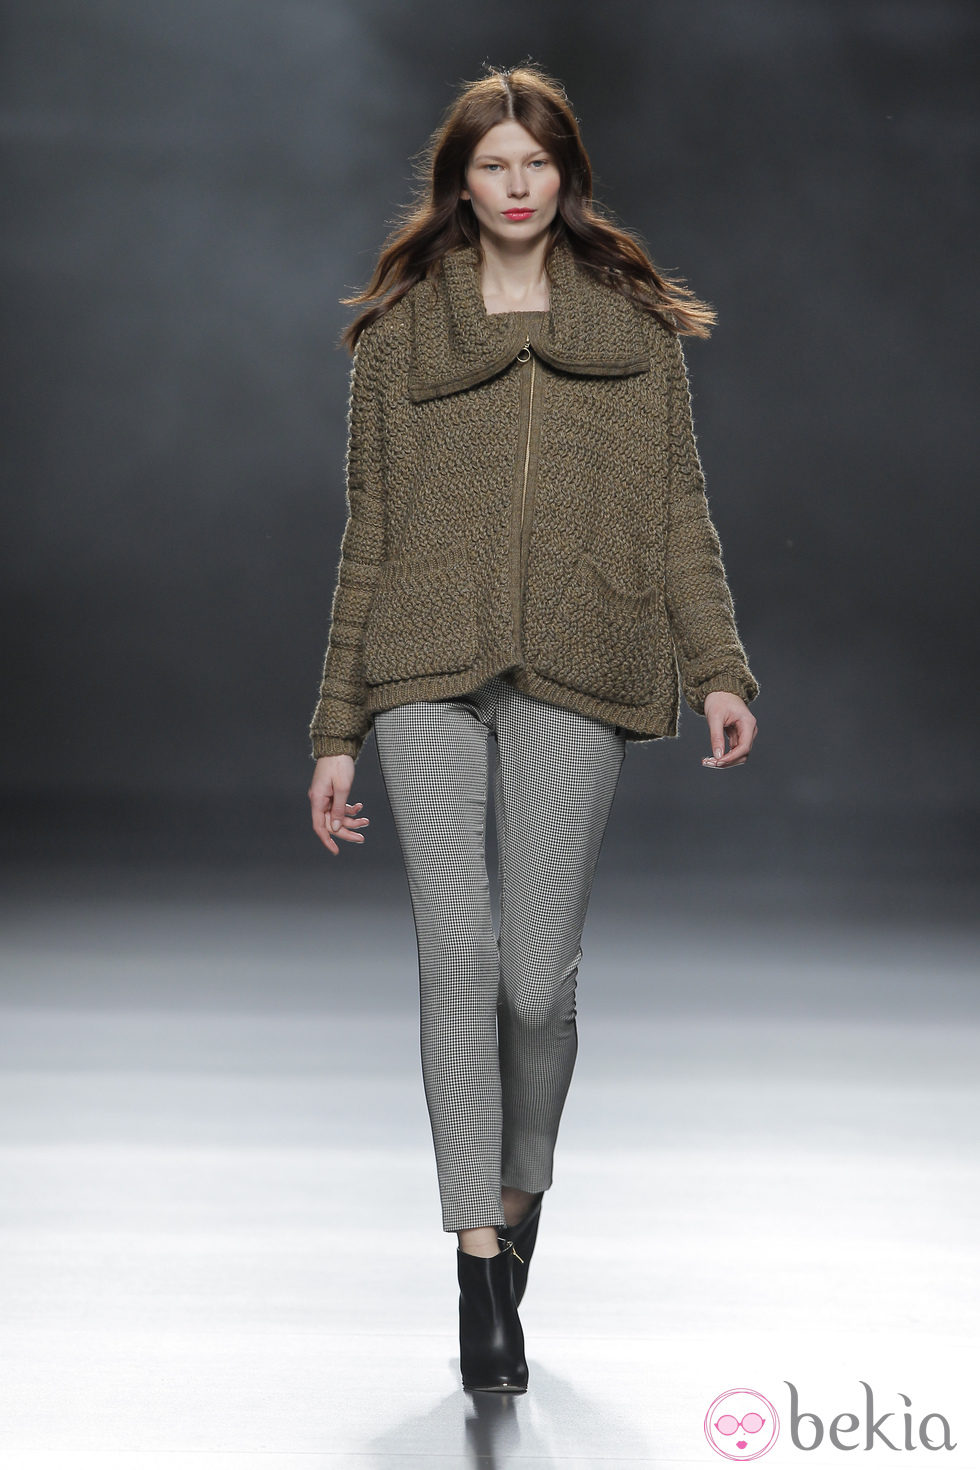 Chaqueta de punto de la colección otoño/invierno 2013/2014 de Sita Murt en Madrid Fashion Week